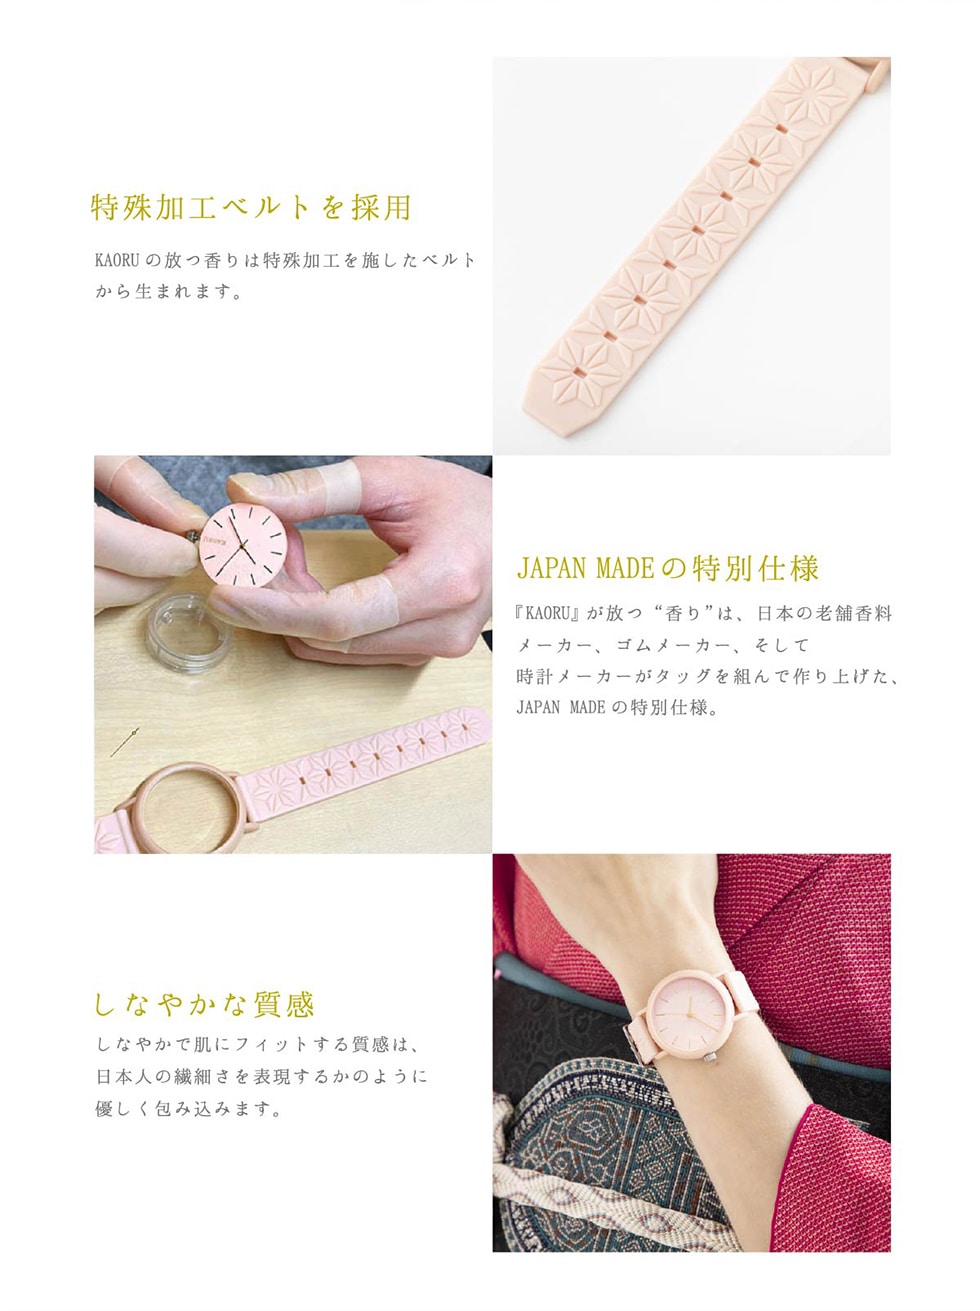 特殊加工ベルトを採用　KAORUの放つ香りは特殊加工を施したベルトから生まれます。JAPAN MADEの特別仕様　『KAORU』が放つ“香り”は、日本の老舗香料メーカー、ゴムメーカー、そして時計メーカーがタッグを組んで作り上げた、JAPAN MADE の特別仕様。　しなやかな質感　しなやかで肌にフィットする質感は、日本人の繊細さを表現するかのように優しく包み込みます。